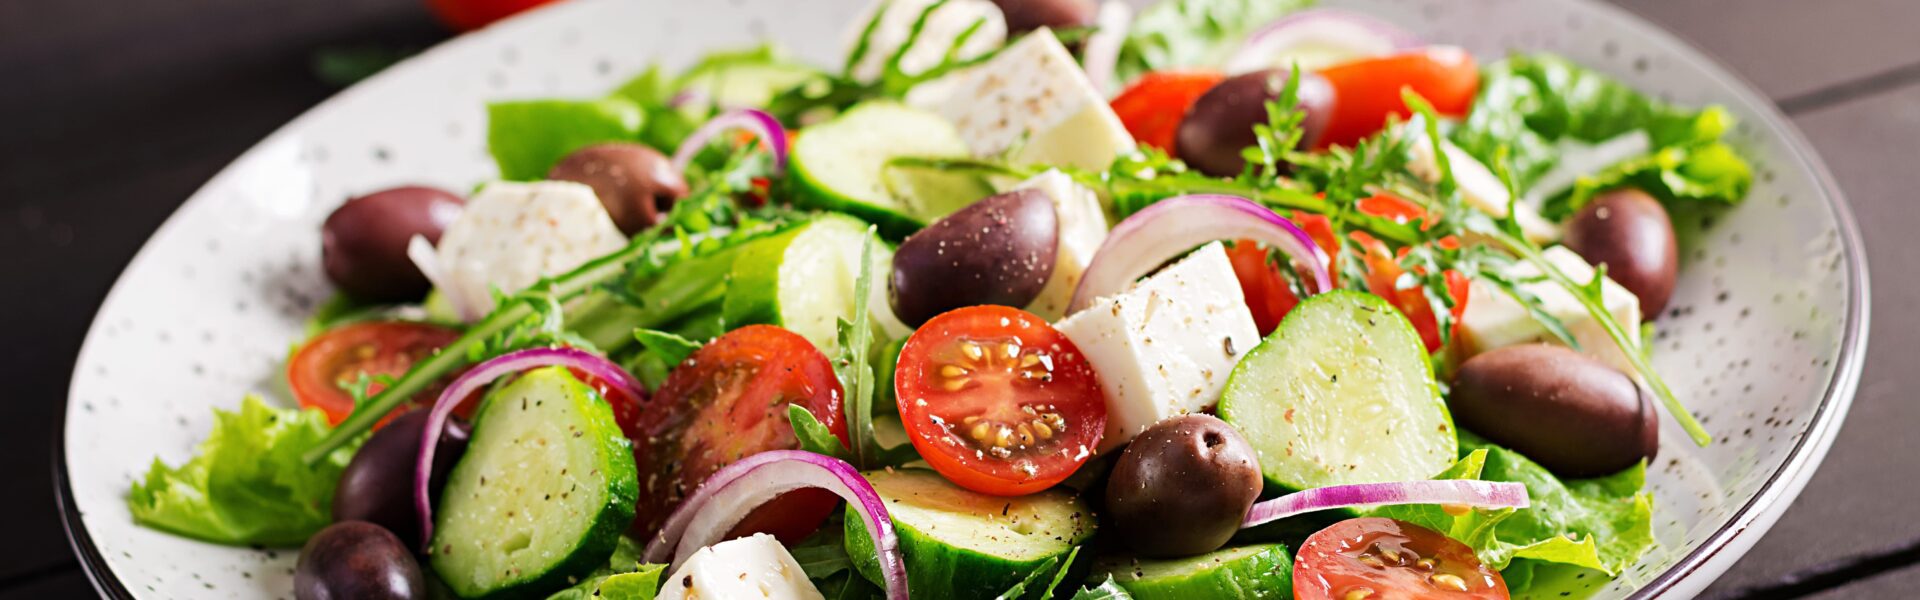 Grieķu tradicionālie salāti